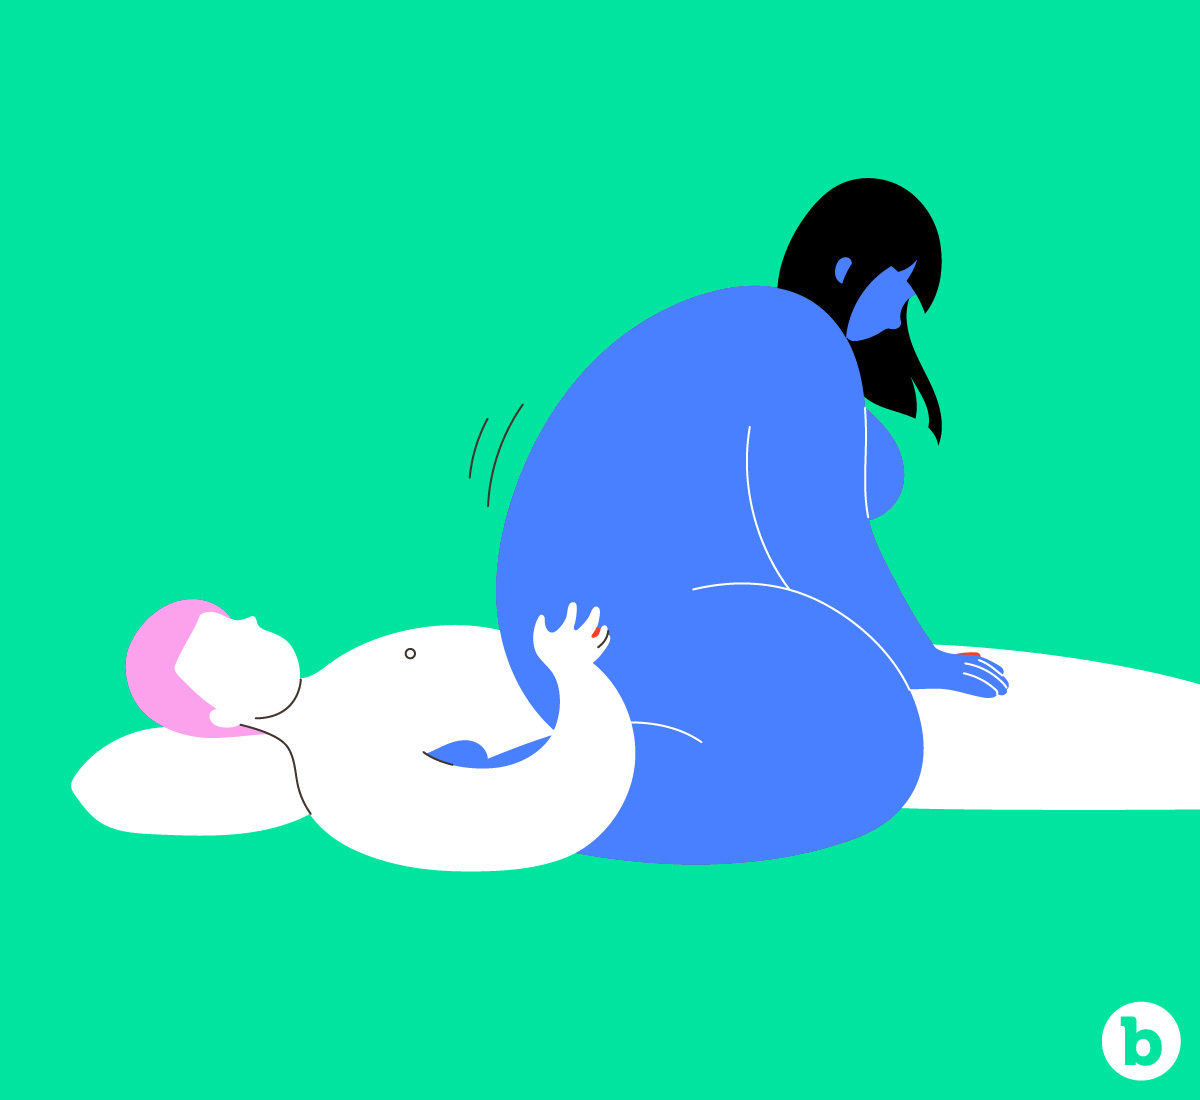 Woman sat on top of man facing away having anal sex